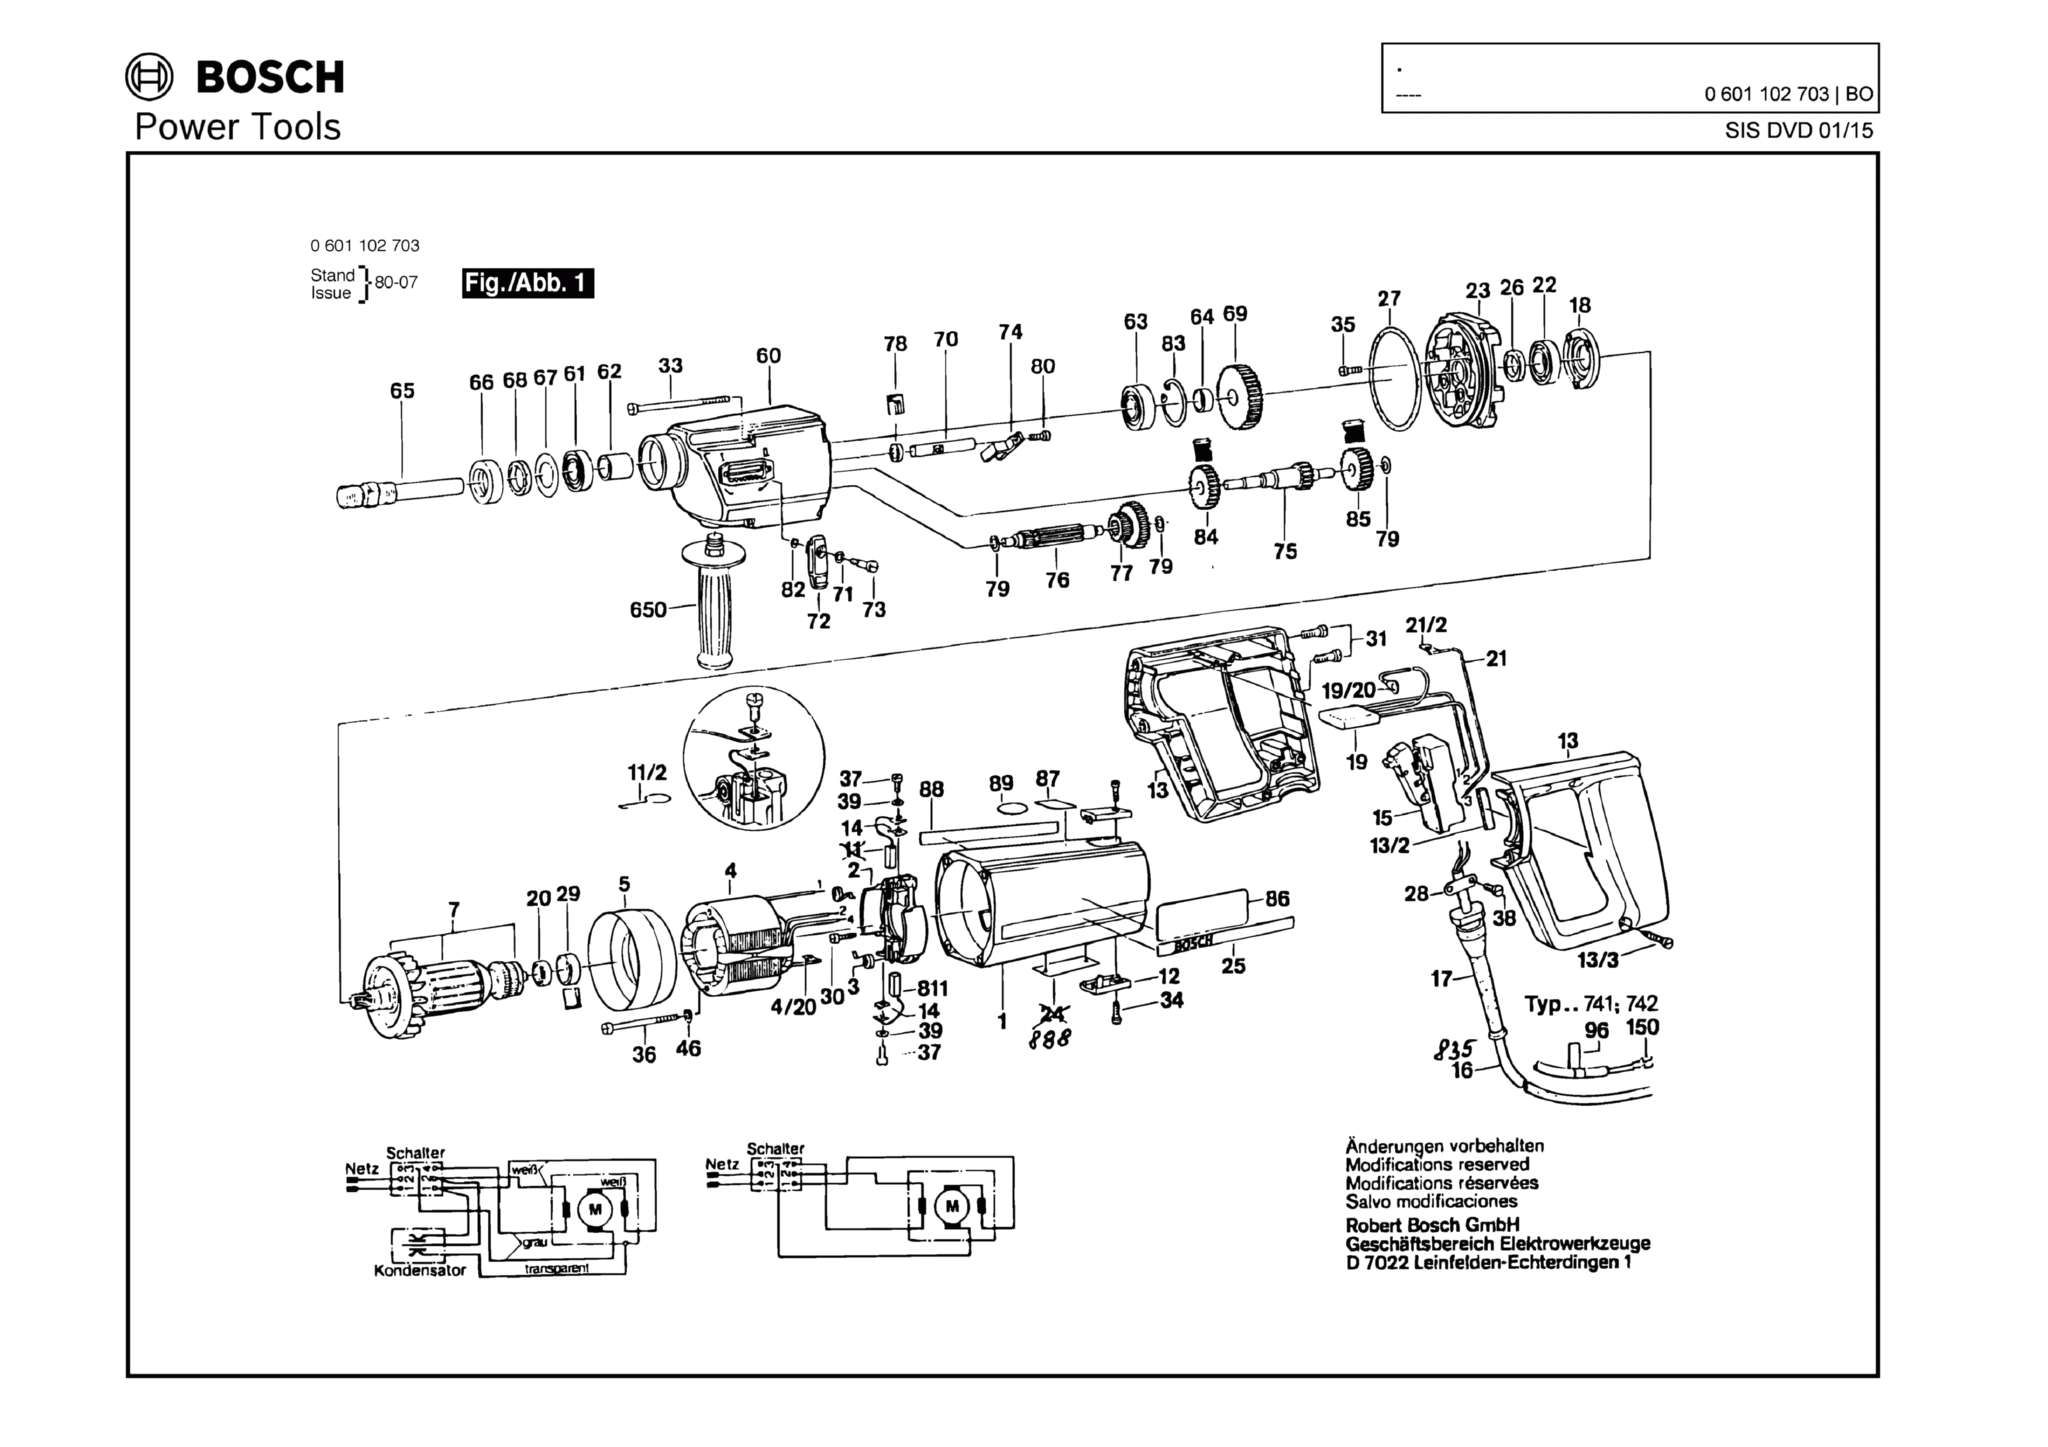 Запчасти, схема и деталировка Bosch (ТИП 0601102703)